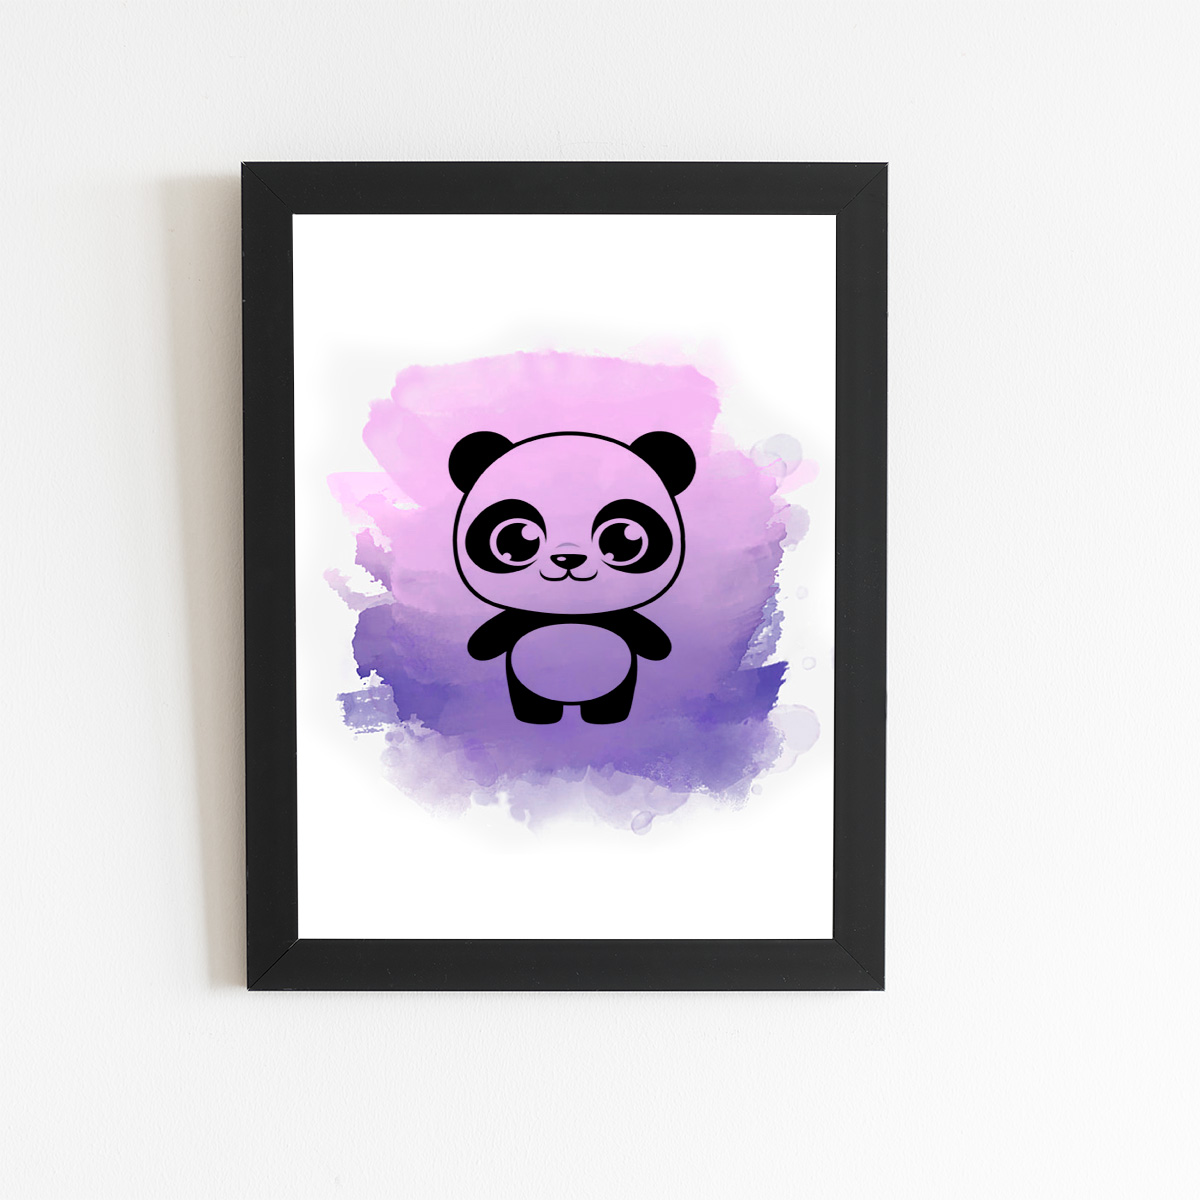 8 melhor ideia de Desenho de panda